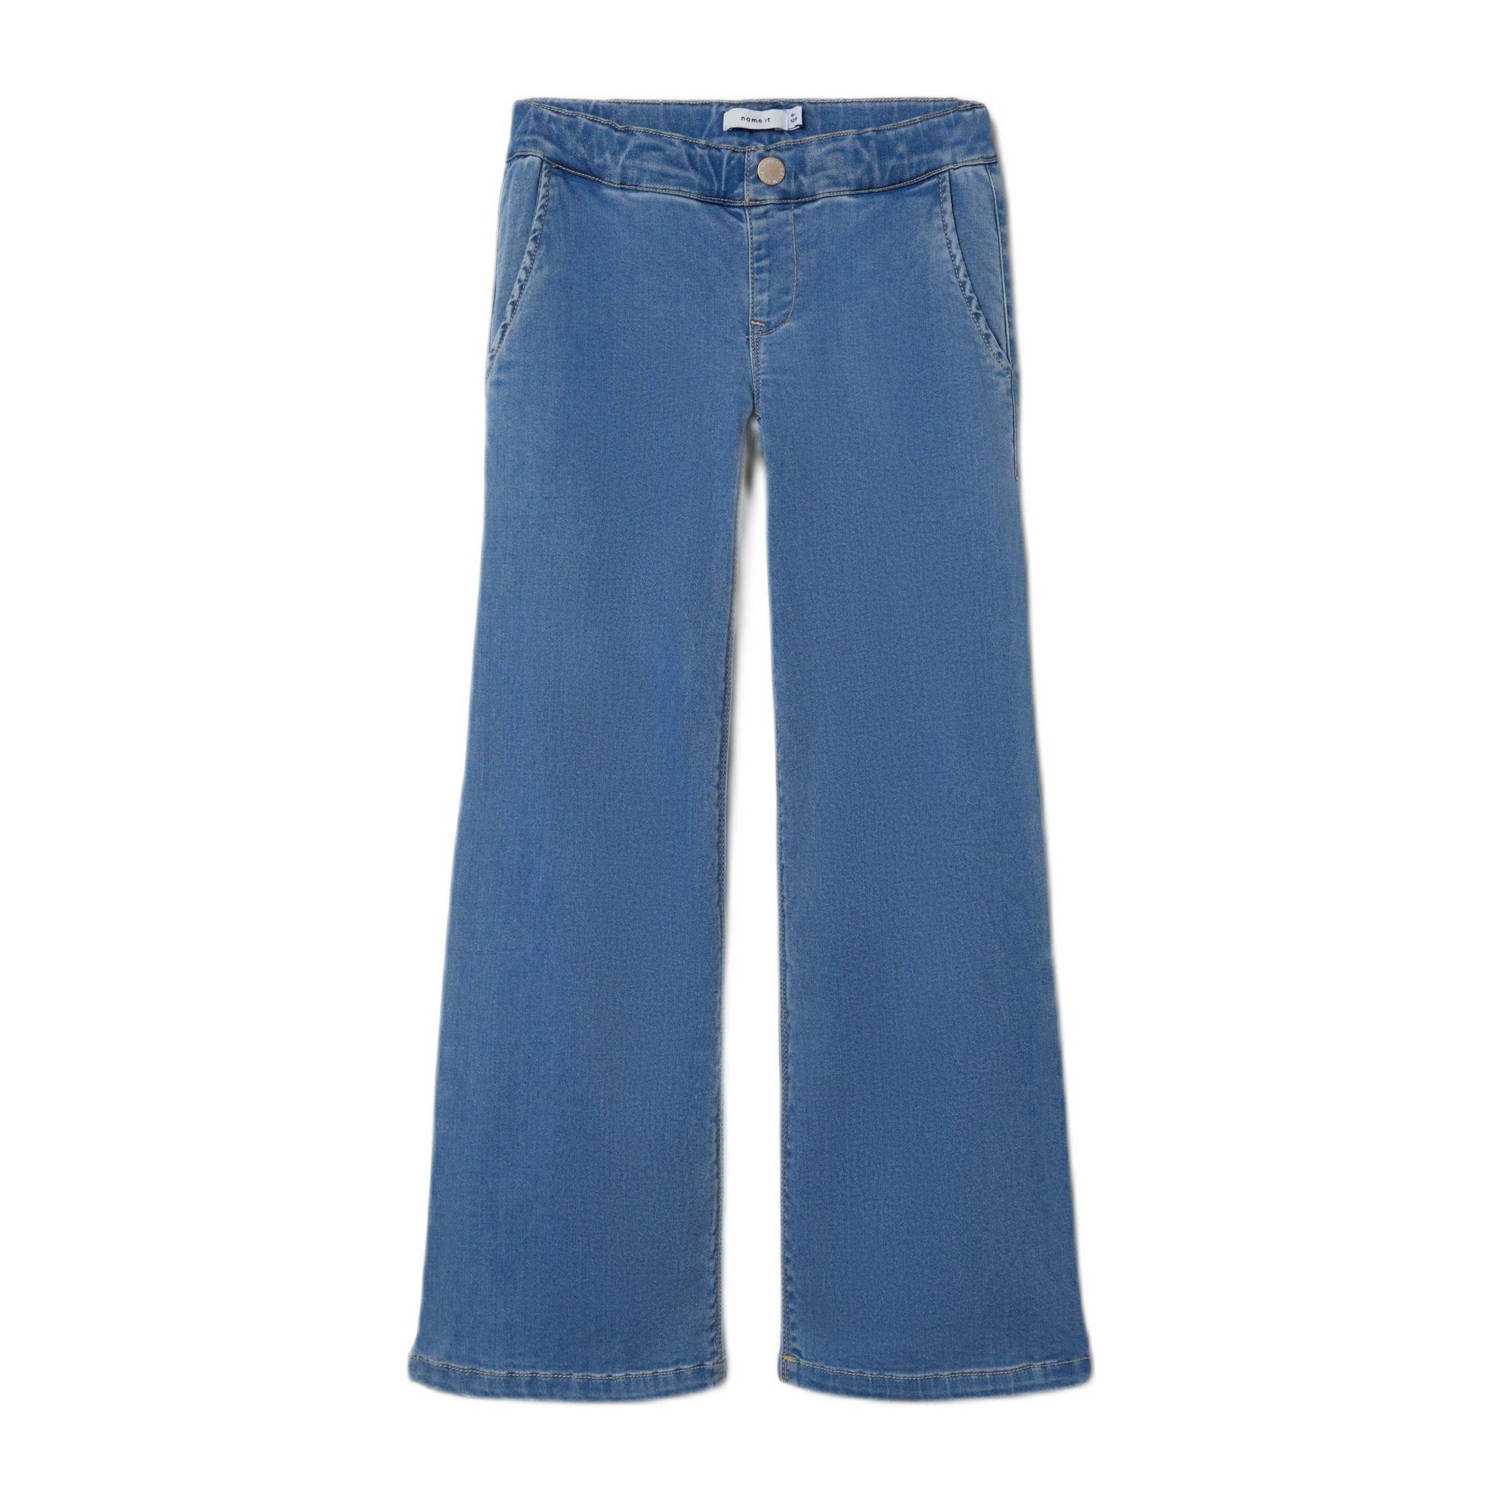 NAME IT KIDS flared jeans NKFSALLI light blue denim